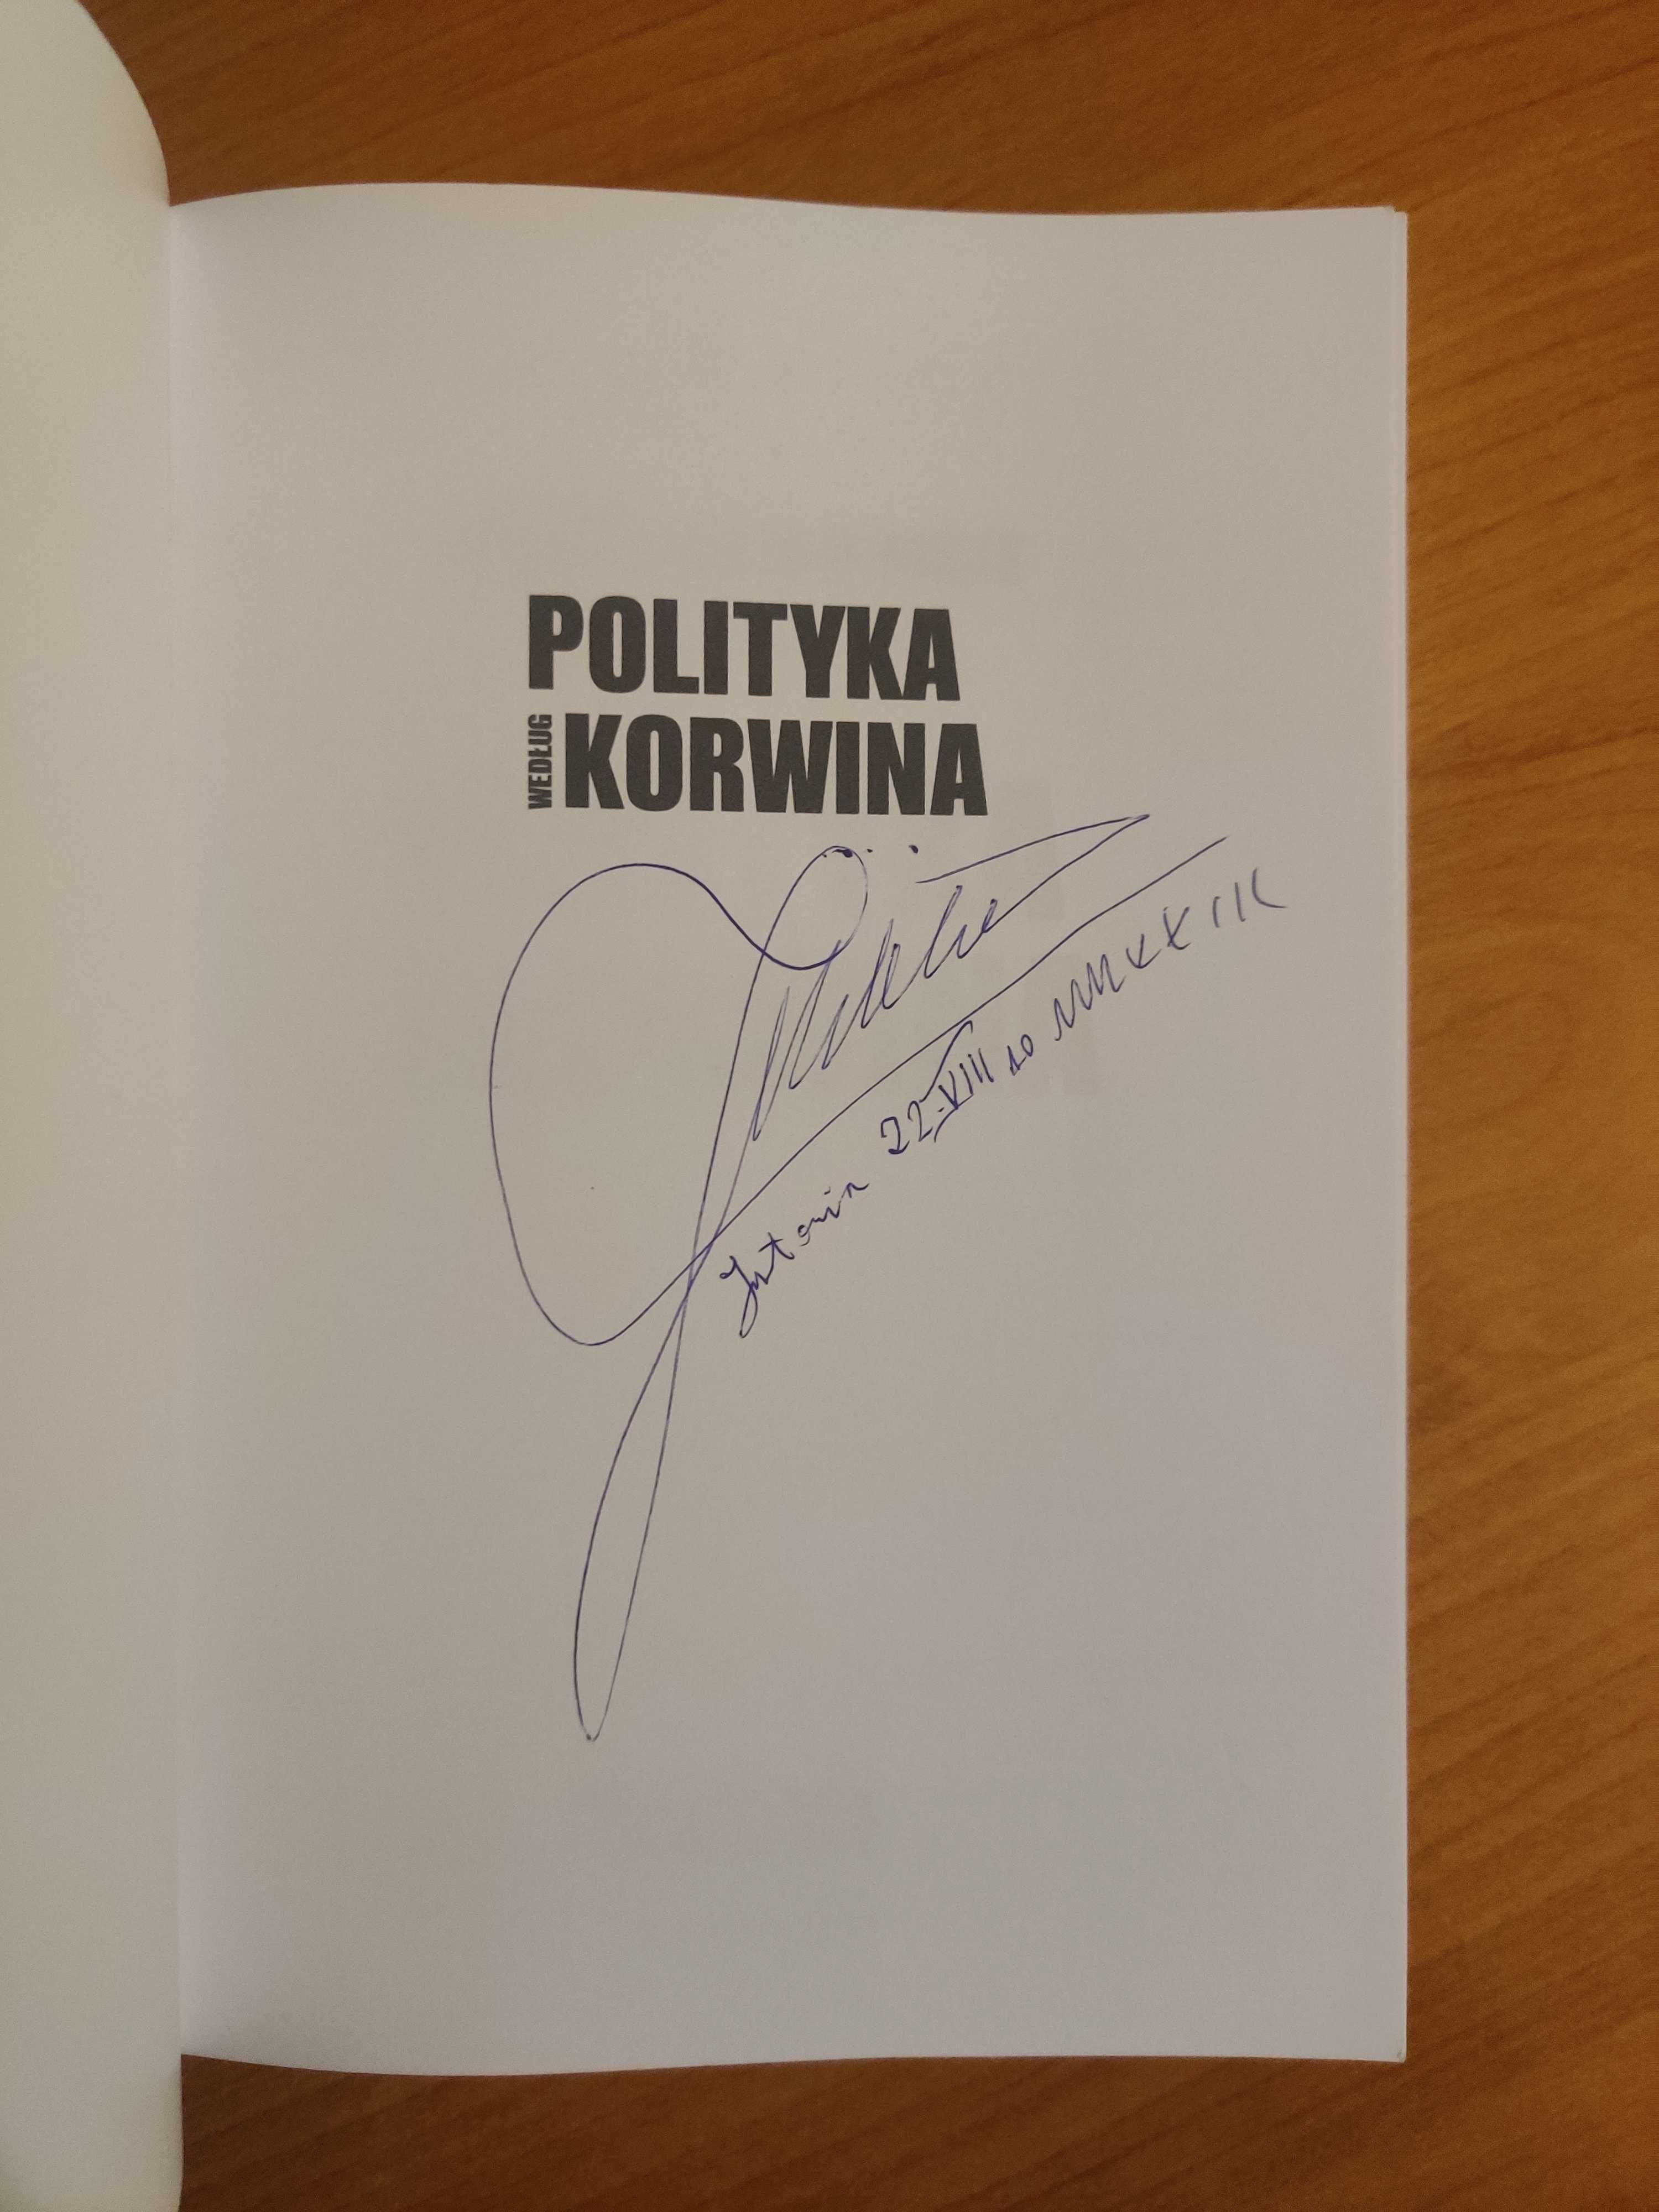 Polityka według Korwina z autografem